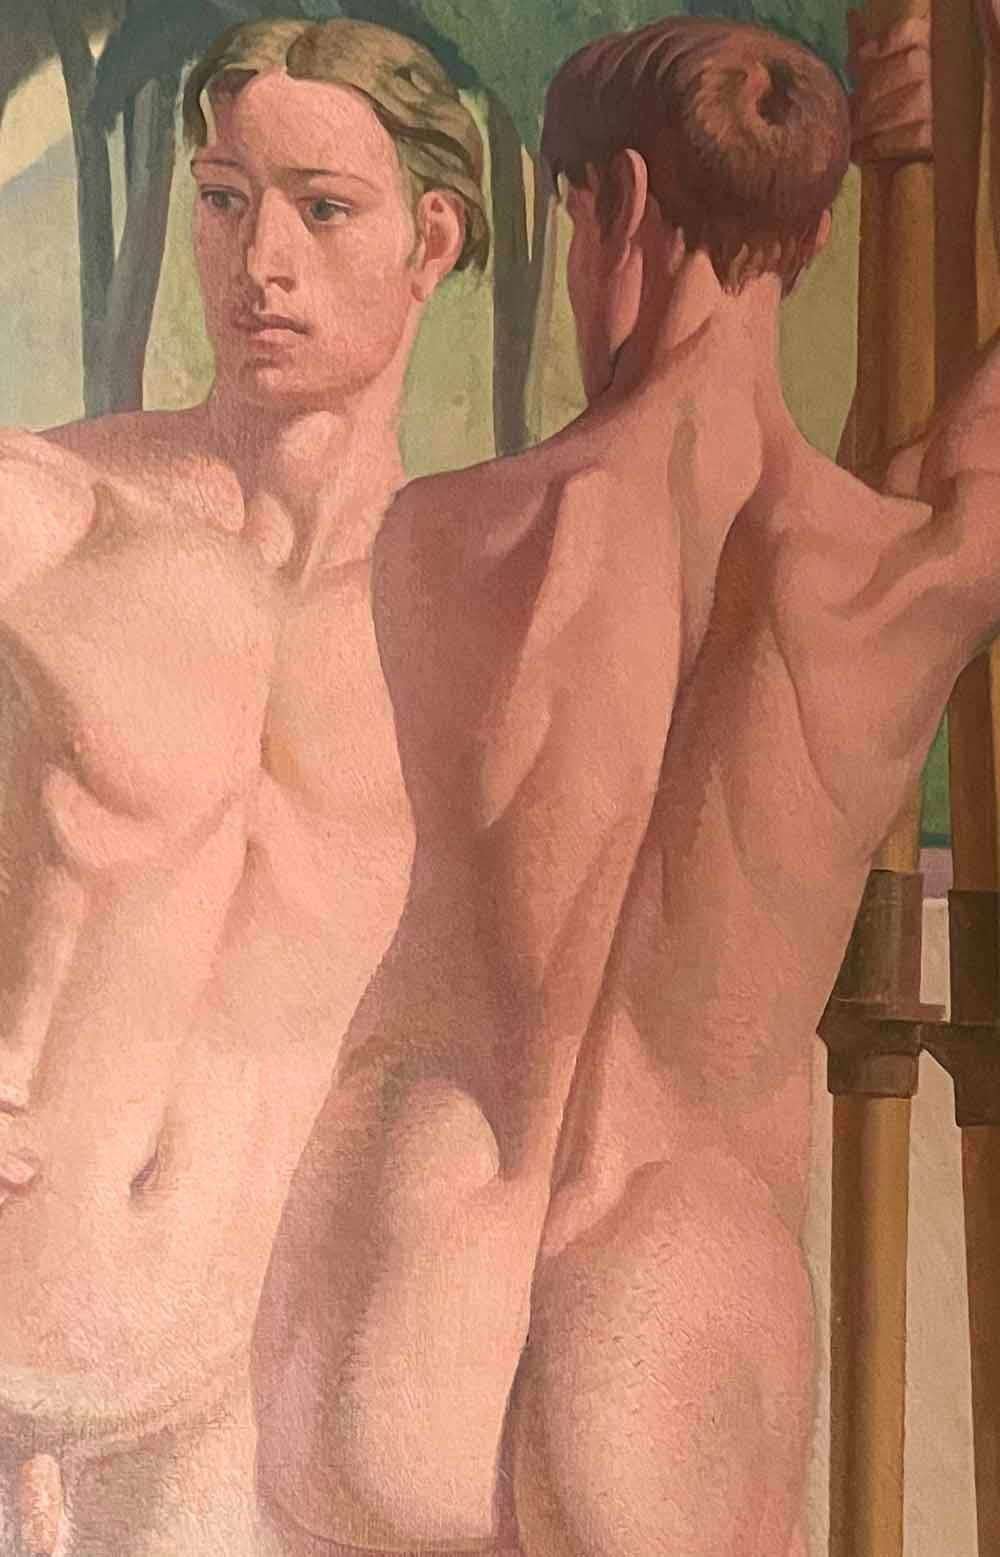 Peinture « Five Olympic Rowers », peinture monumentale des années 1930 représentant des oiseaux masculins nus en vente